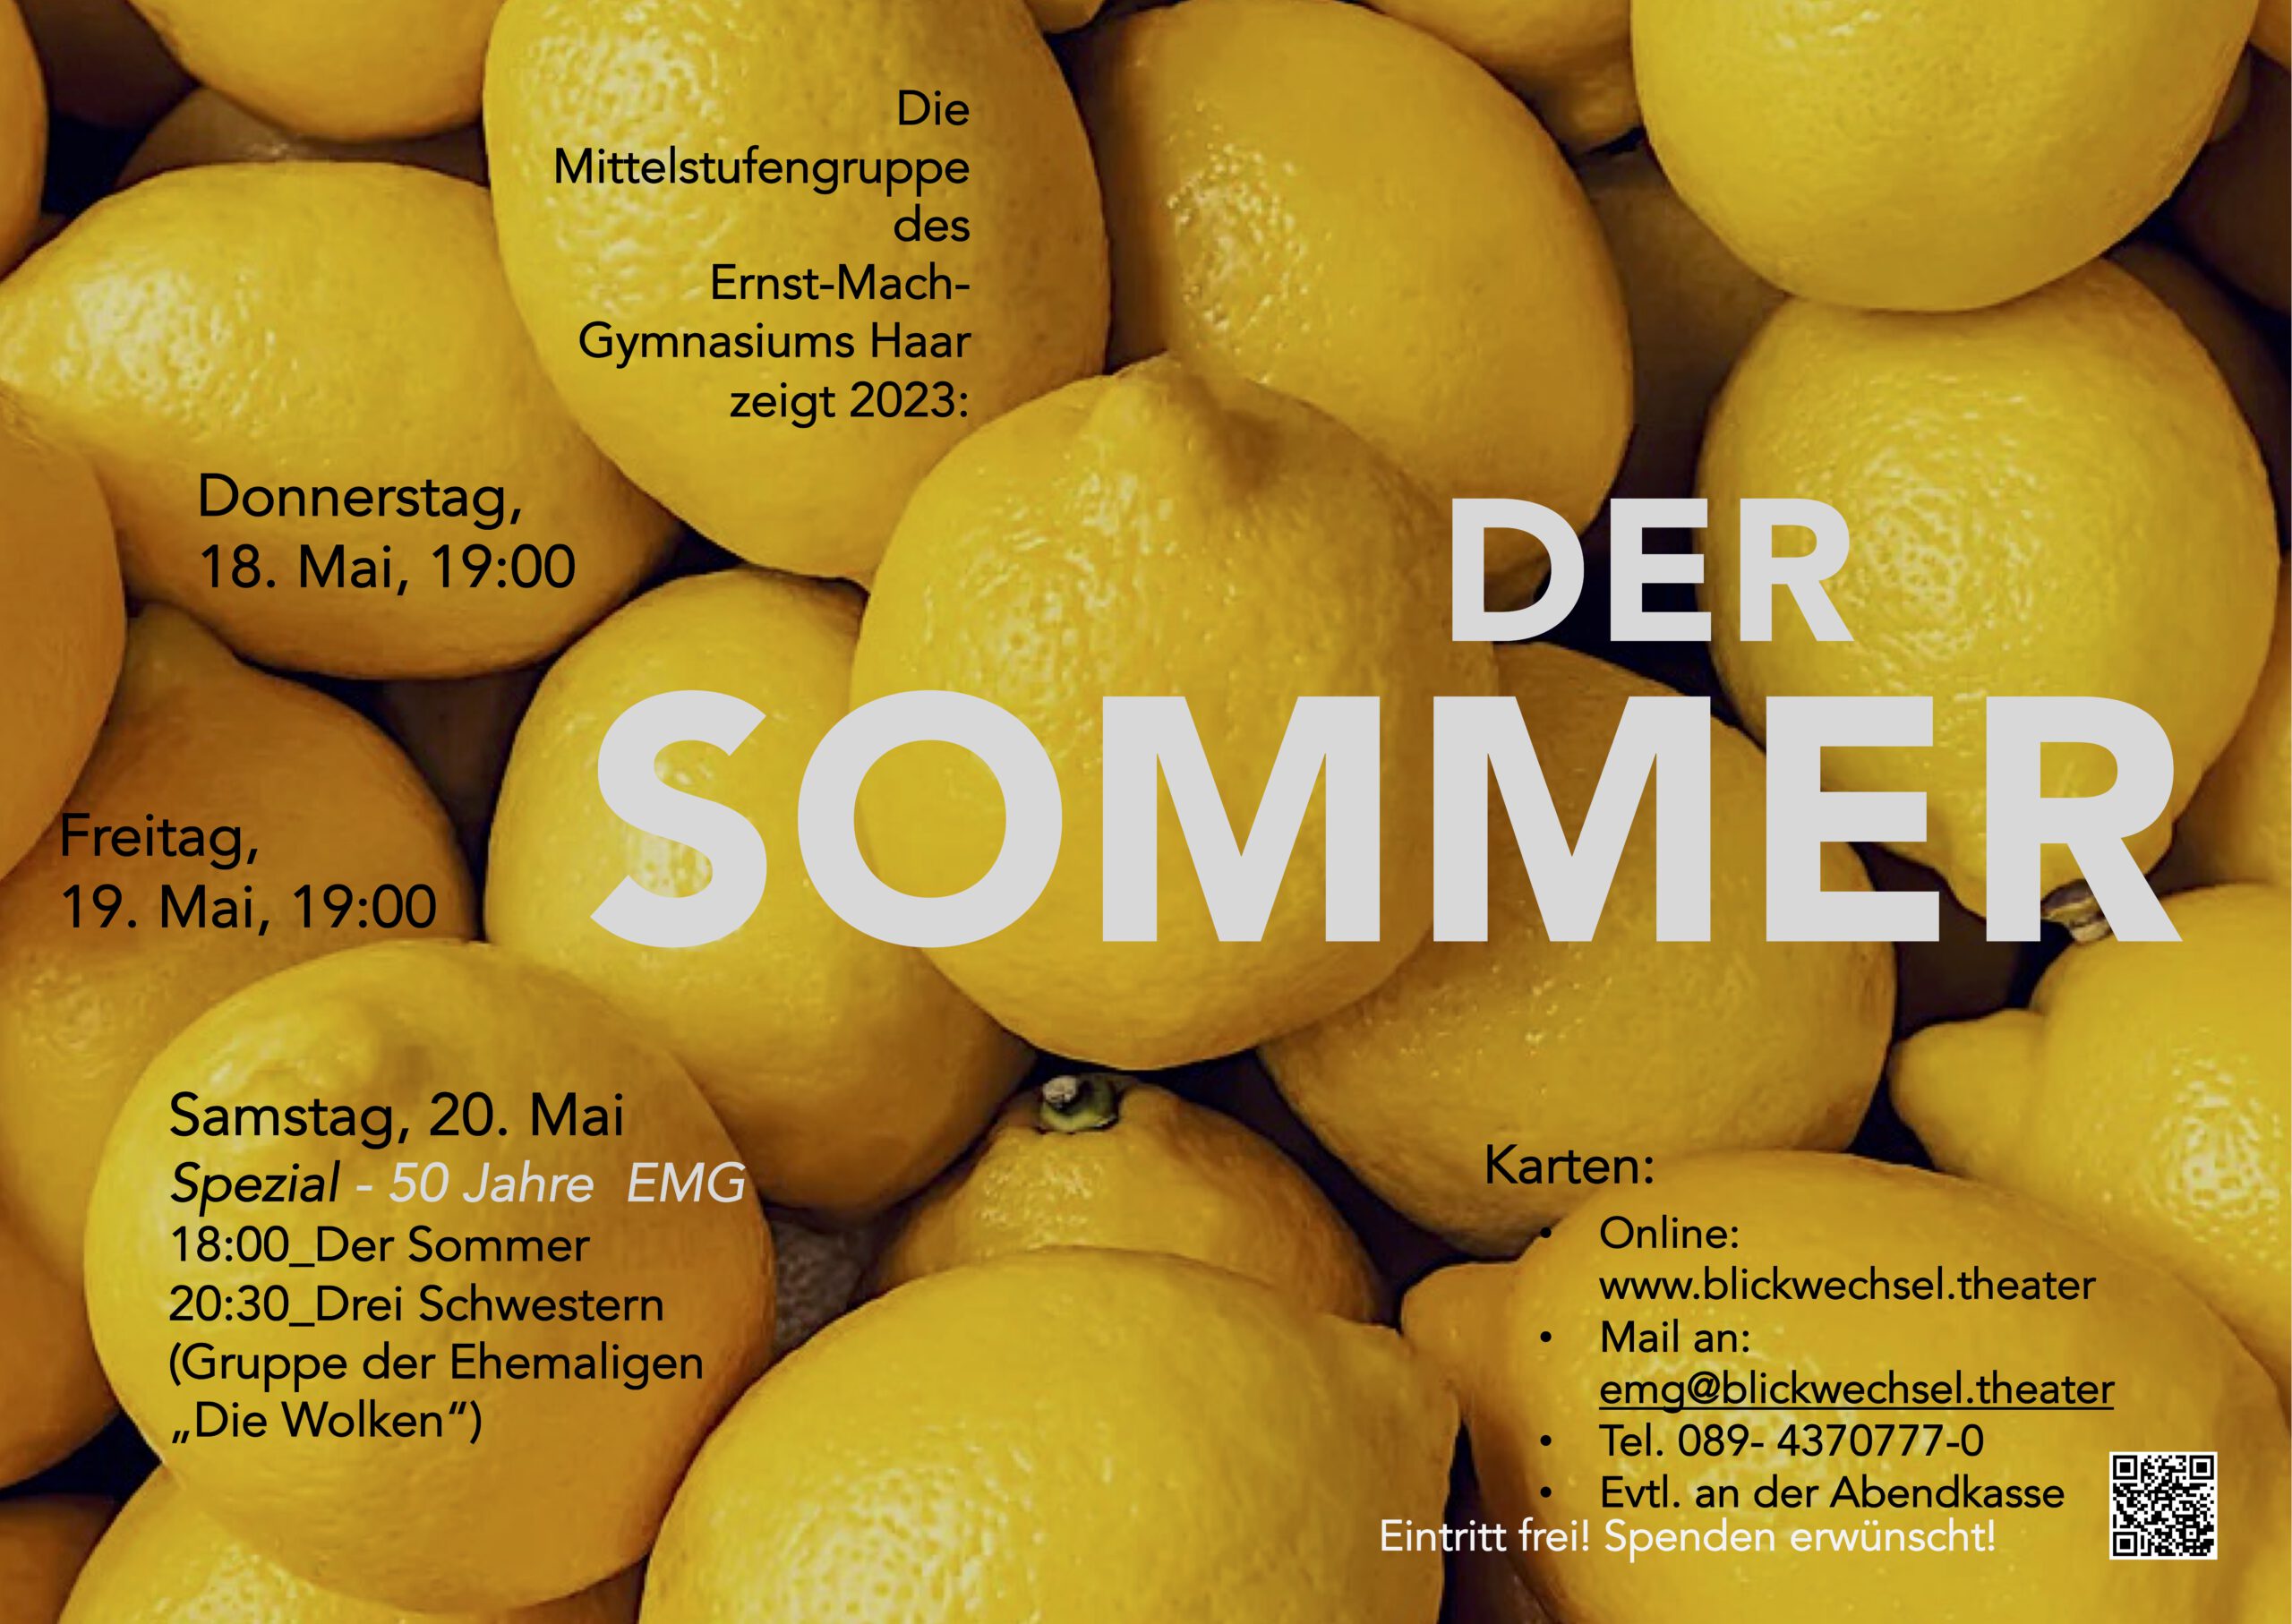 Der Sommer - Theater der Mittelstufengruppe am 18.5.23 (Premiere) um 19:00 Uhr